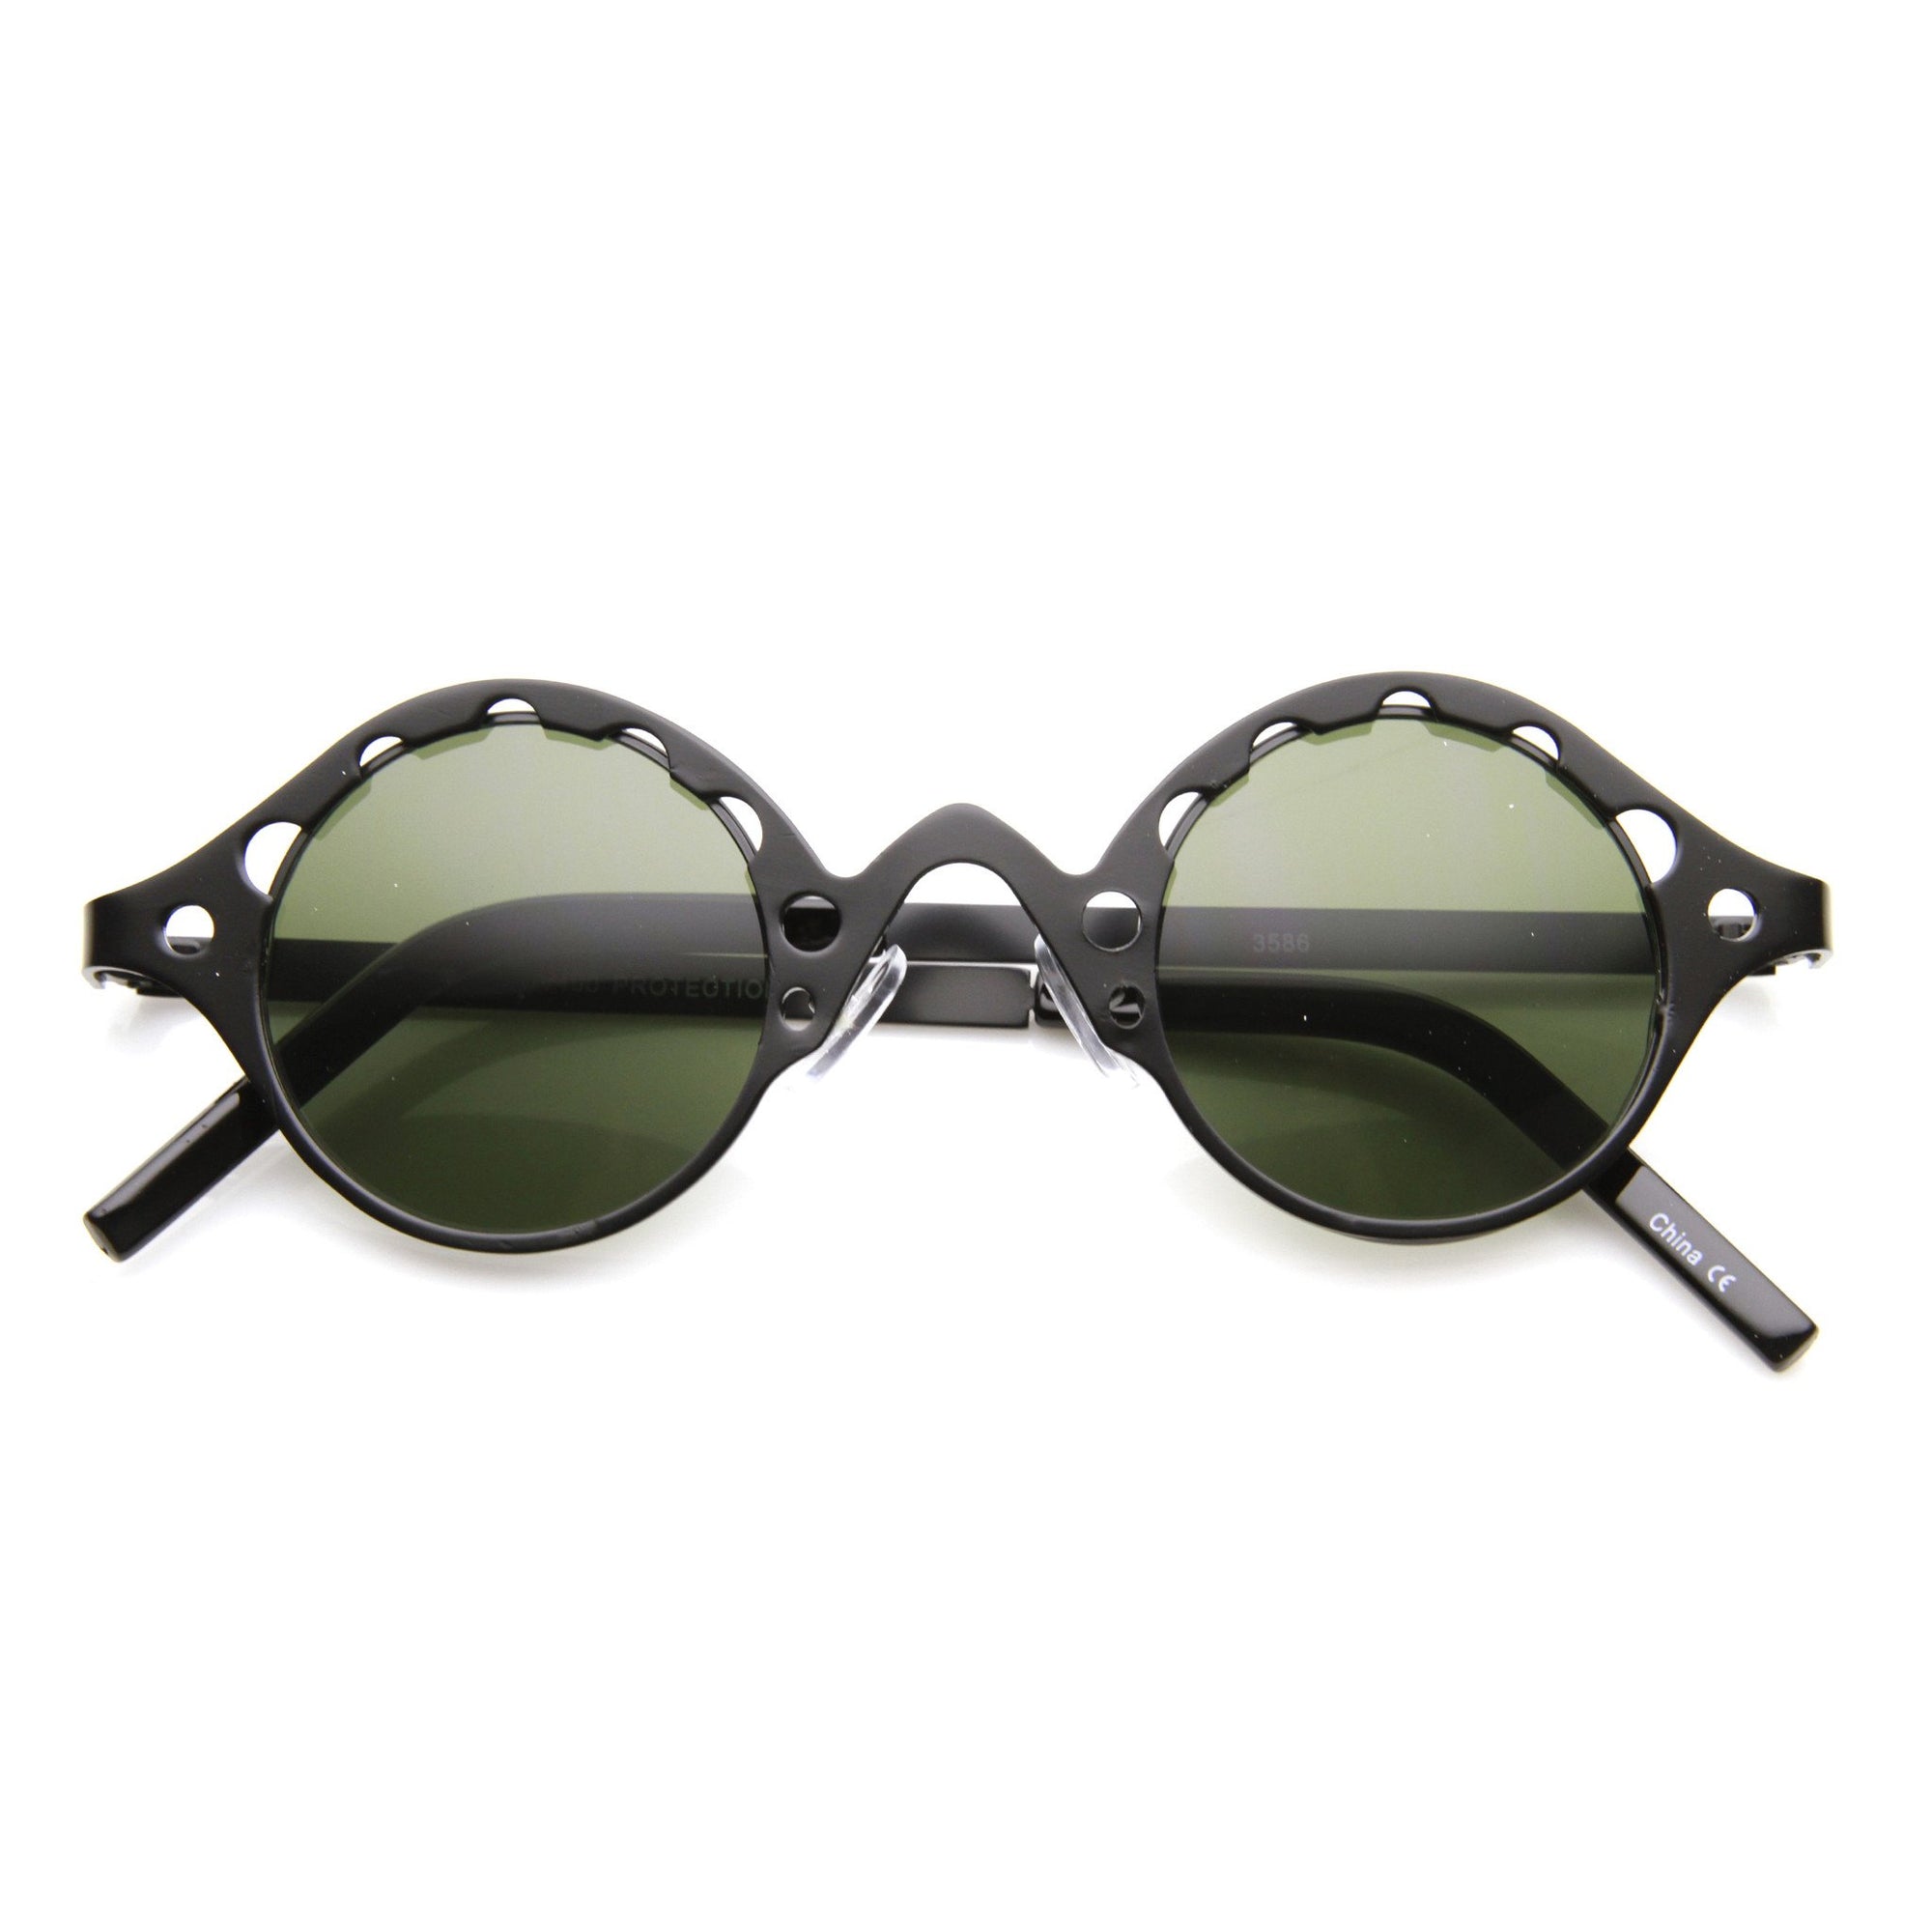 Vintage Steampunk Round Chain Frame Sunglasses Zerouv